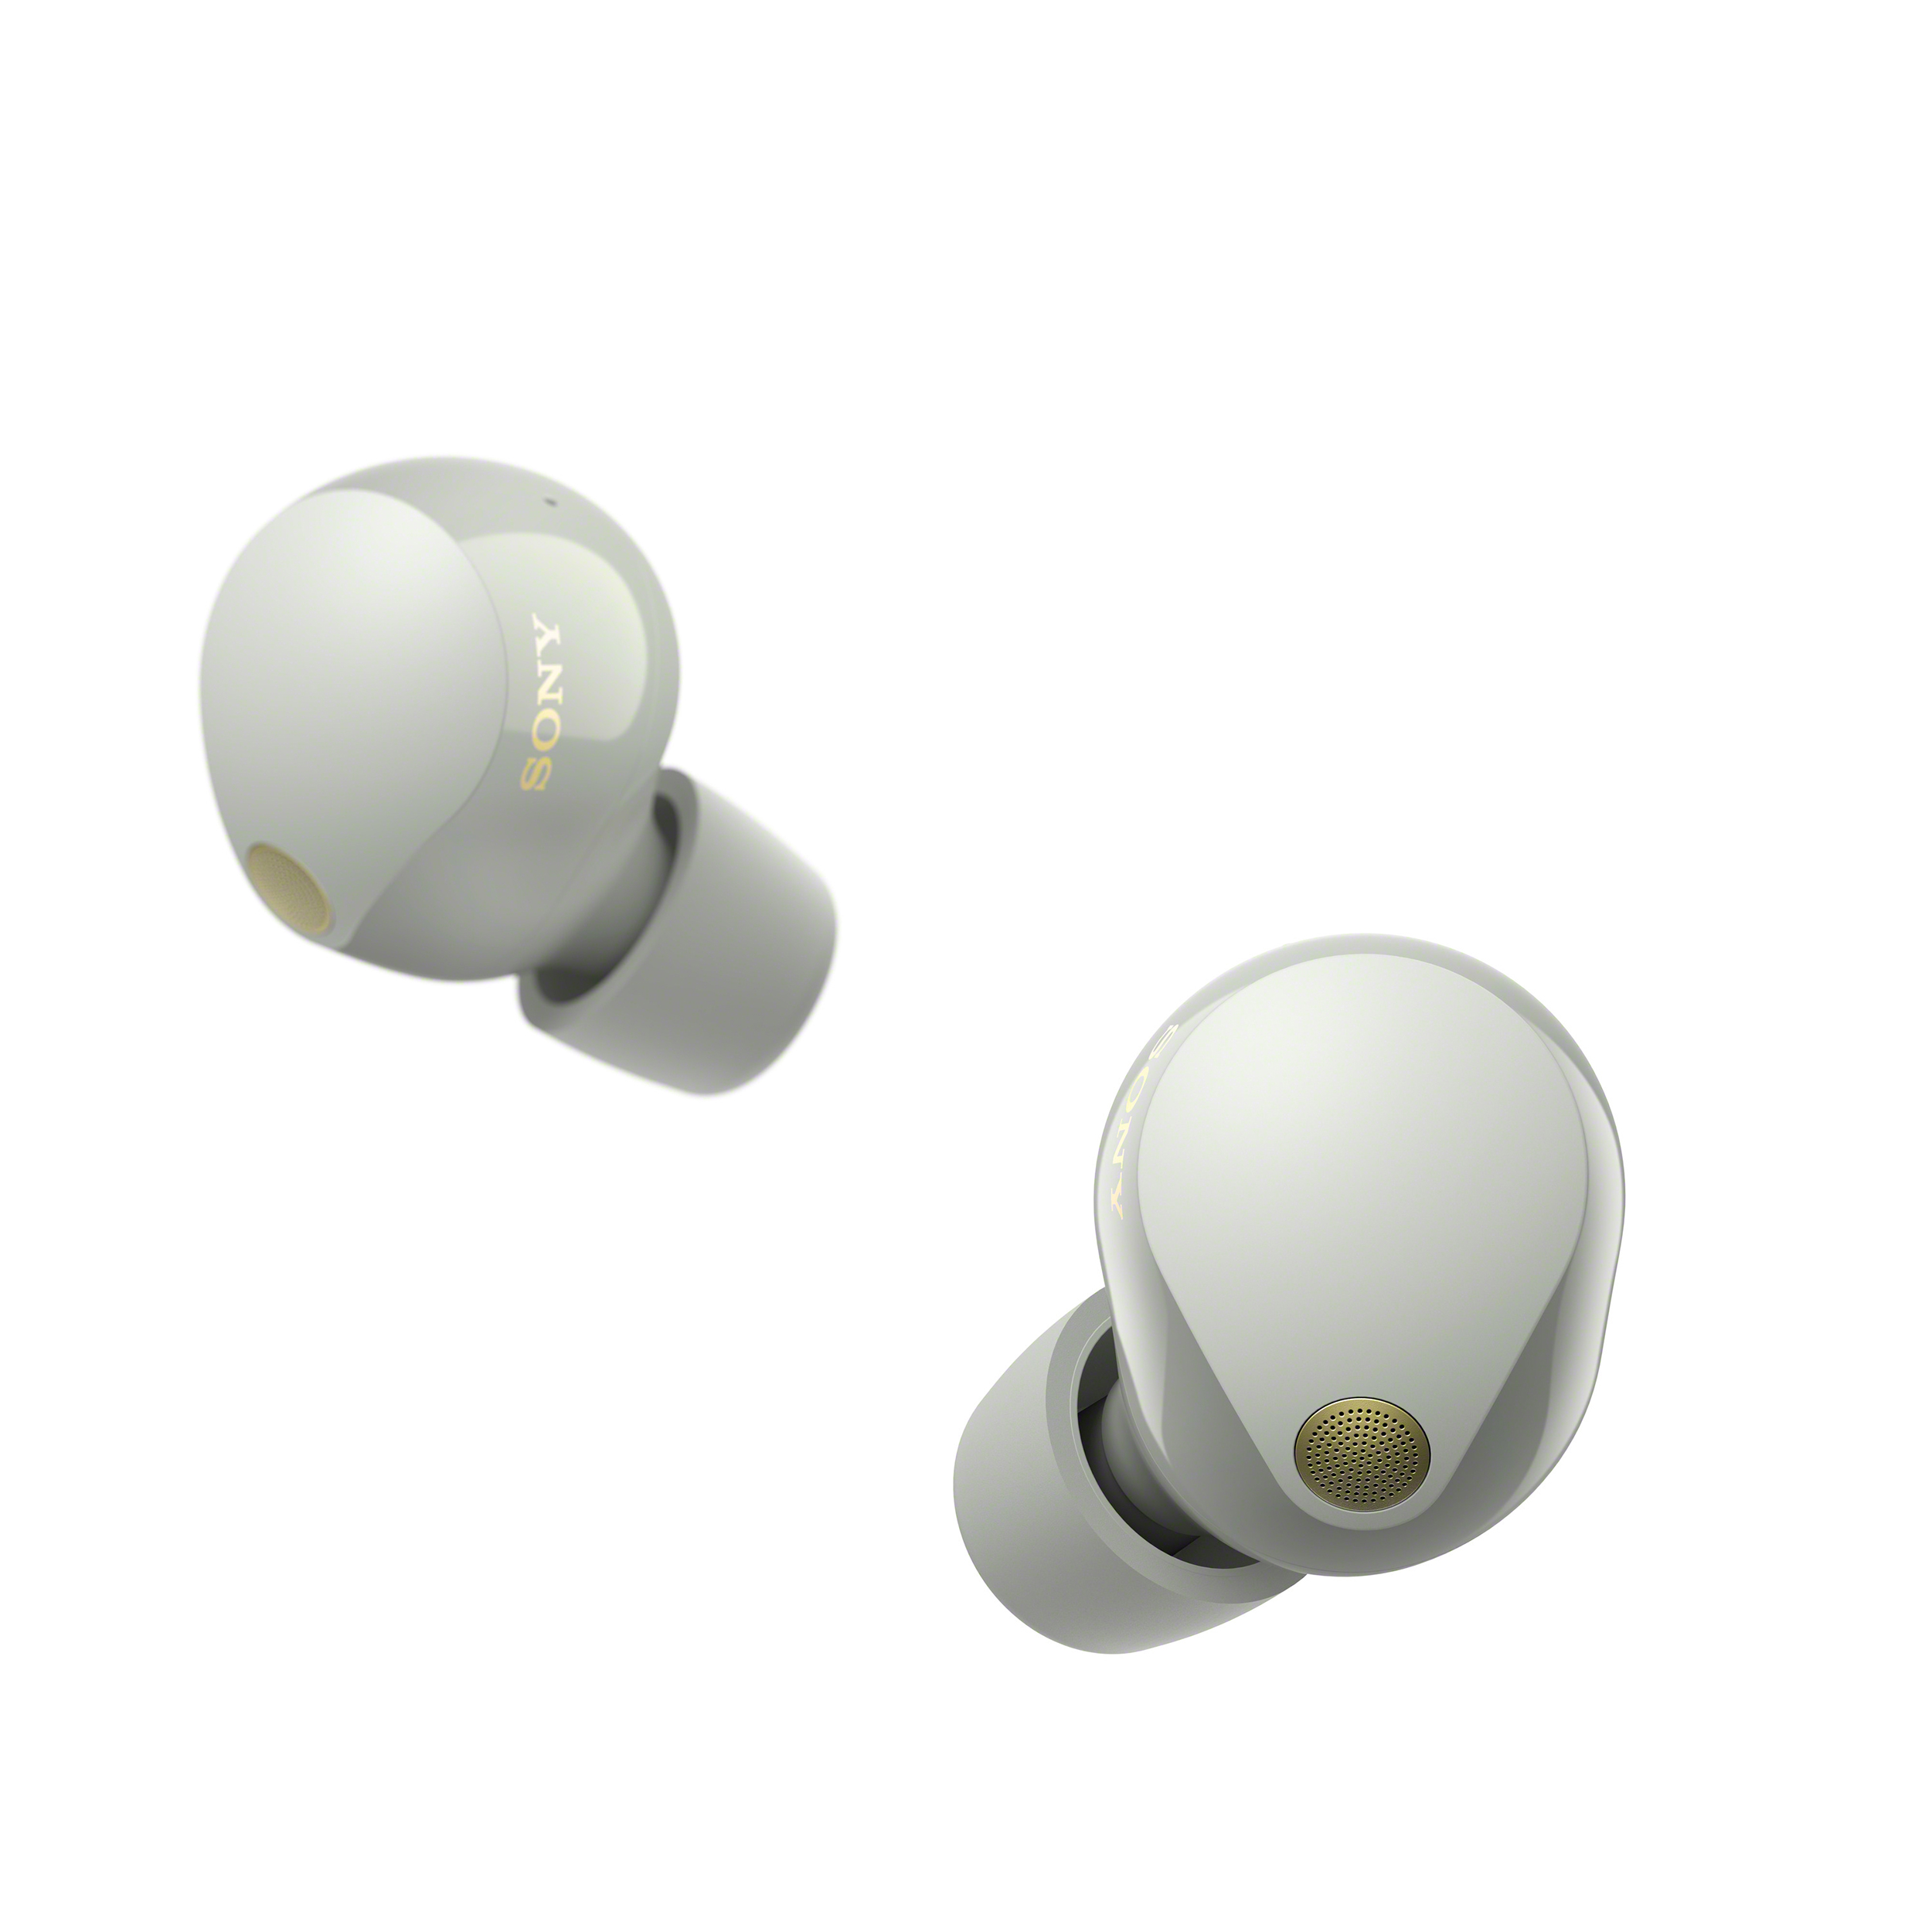 白色 WF-1000XM5 耳機影像。左耳耳機為後視圖，右耳耳機為側面圖